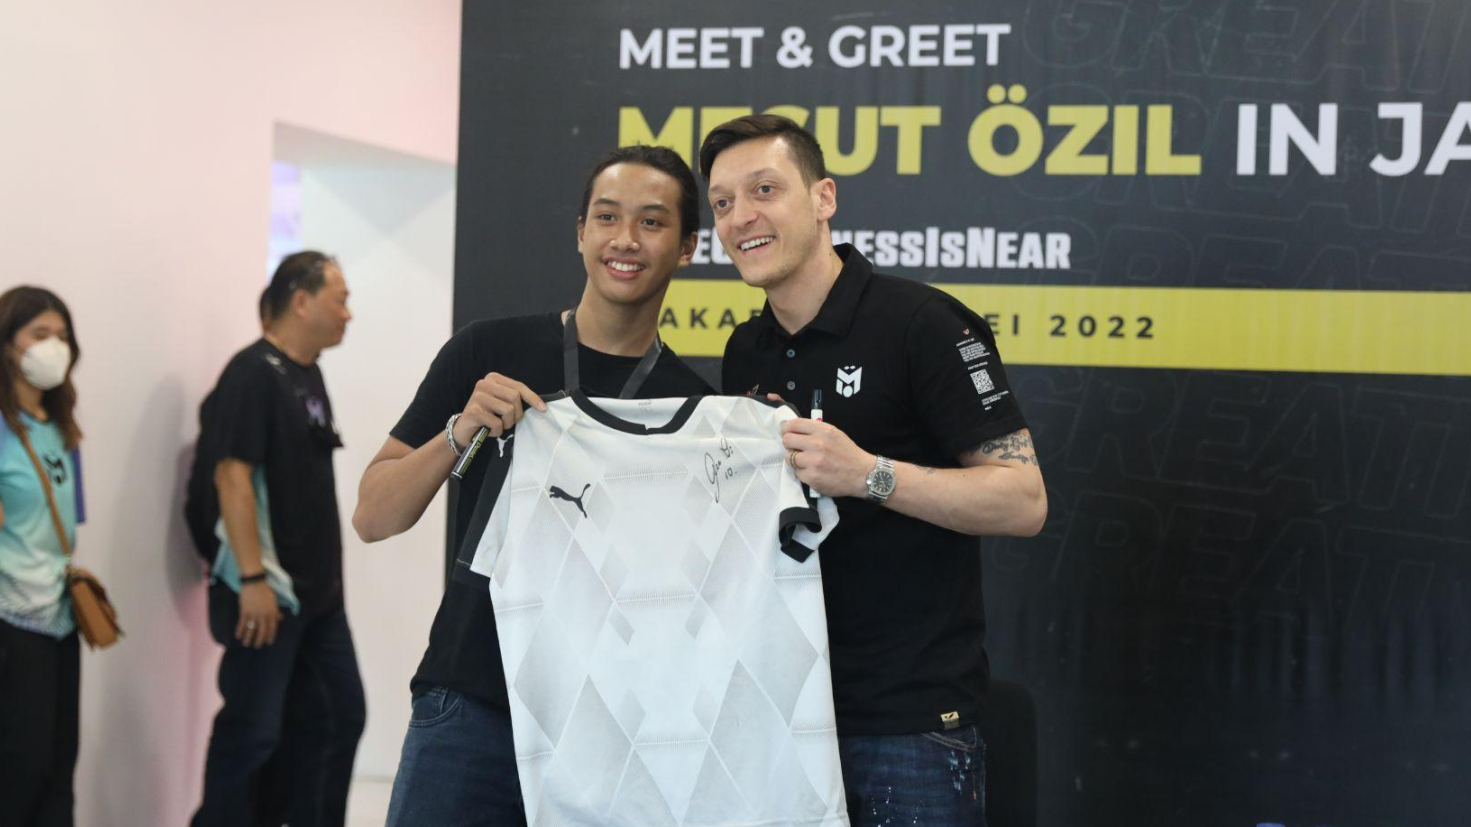 Jumpa penggemar bersama Mesut Ozil di Stadion Utama Gelora Bung Karno, Kamis, 26 Mei 2022 yang dihelat Concave Indonesia.